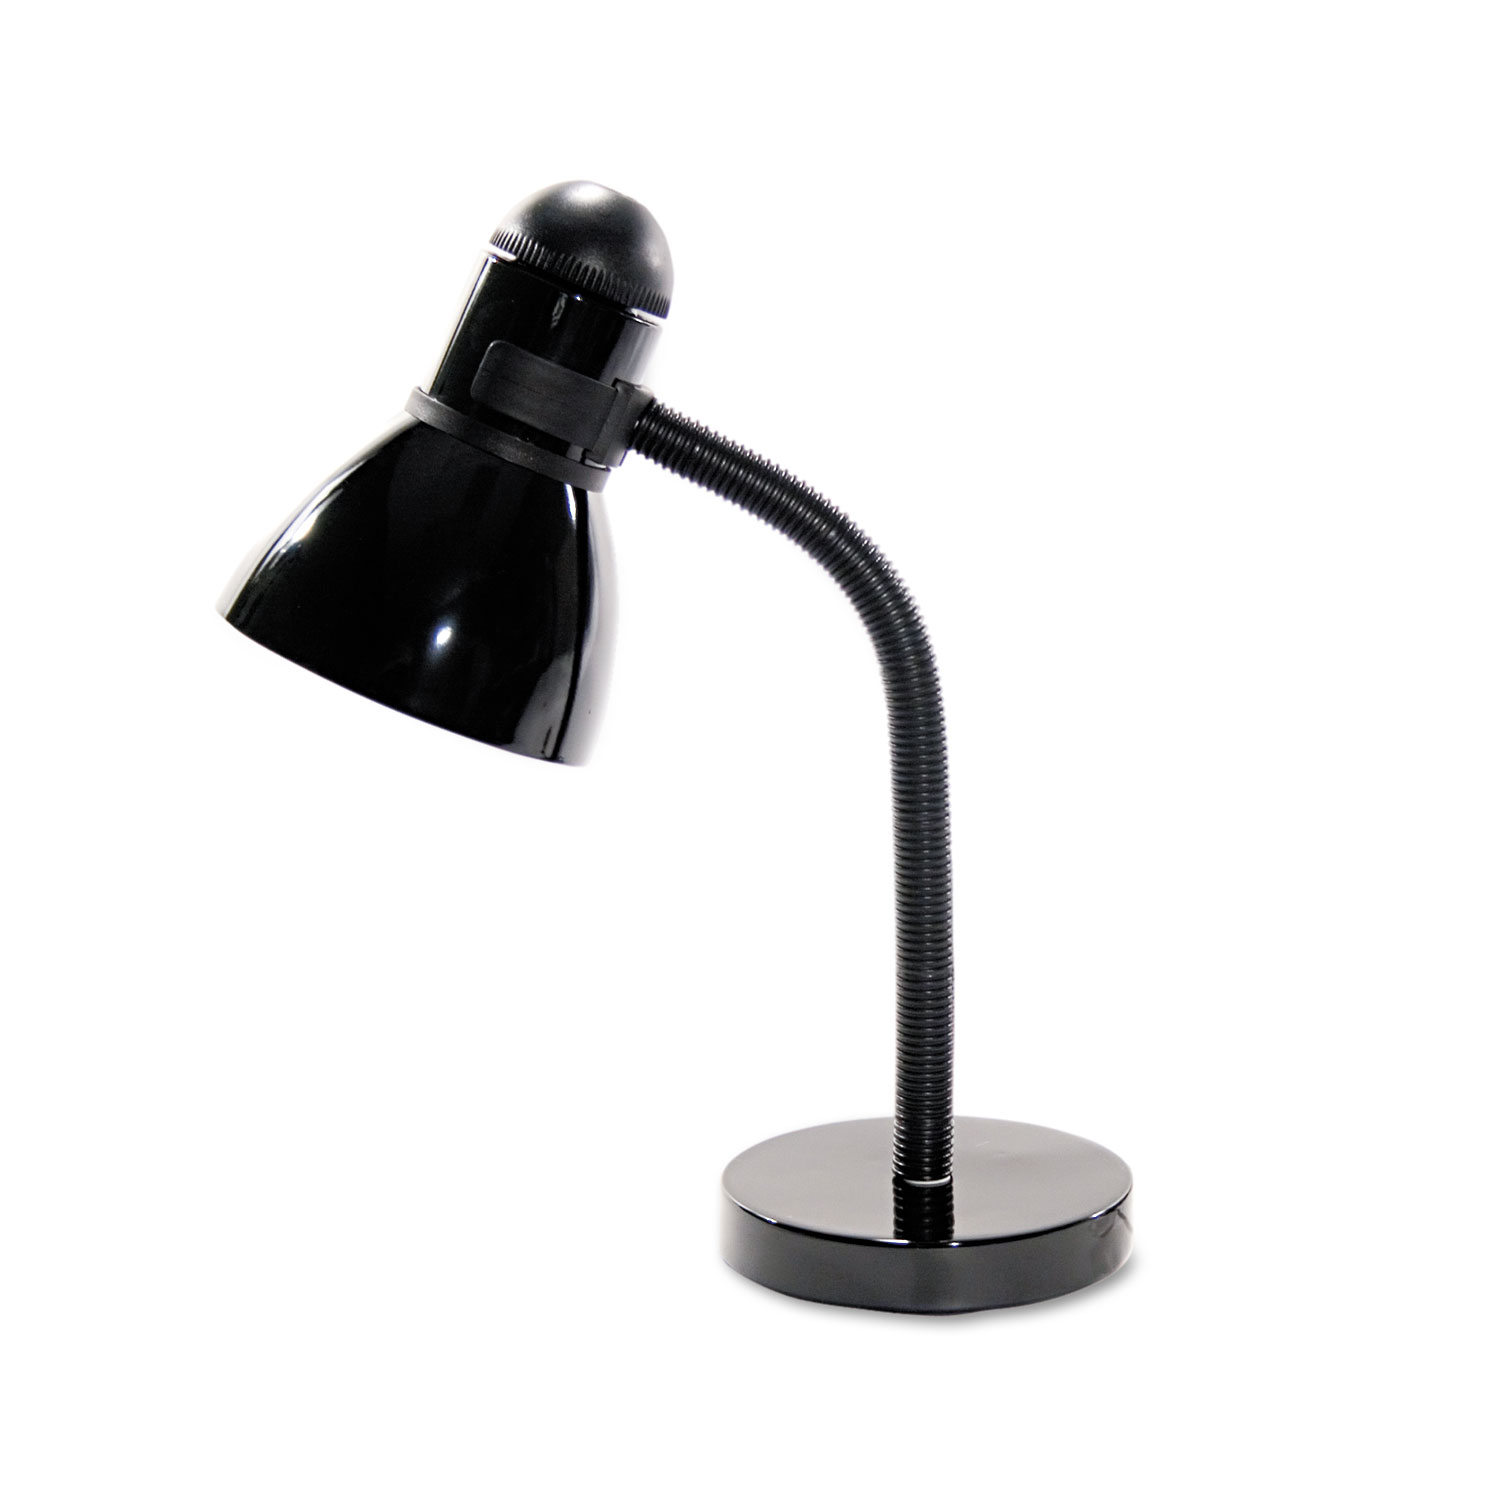  Ledu L9090 Advanced Style Incandescent Gooseneck Desk Lamp, 5.5w x 7.5d x 16.5h, Black (LEDL9090) 